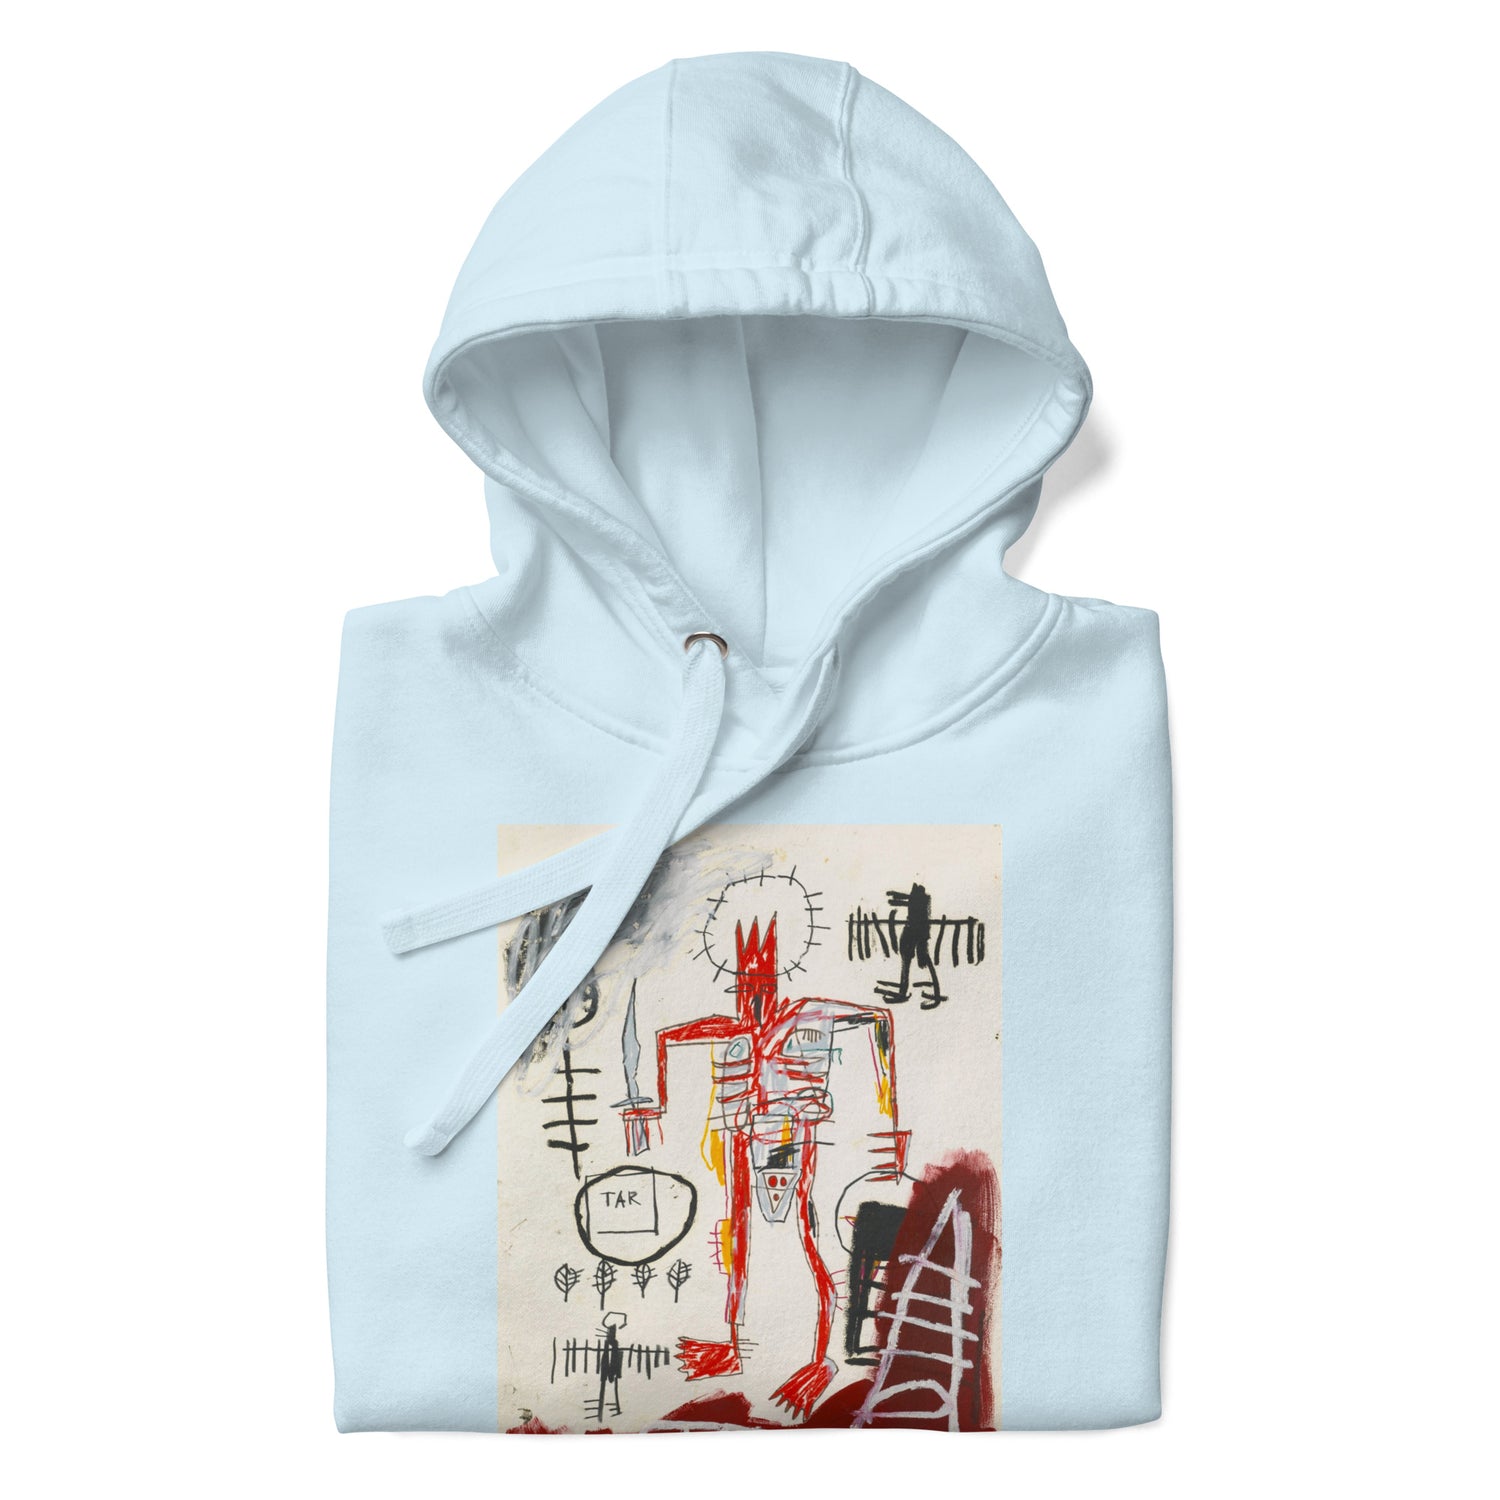 Jean-Michel Basquiat "Untitled" Artwork Printed Premium Streetwear Sweatshirt Hoodie Ice Blue